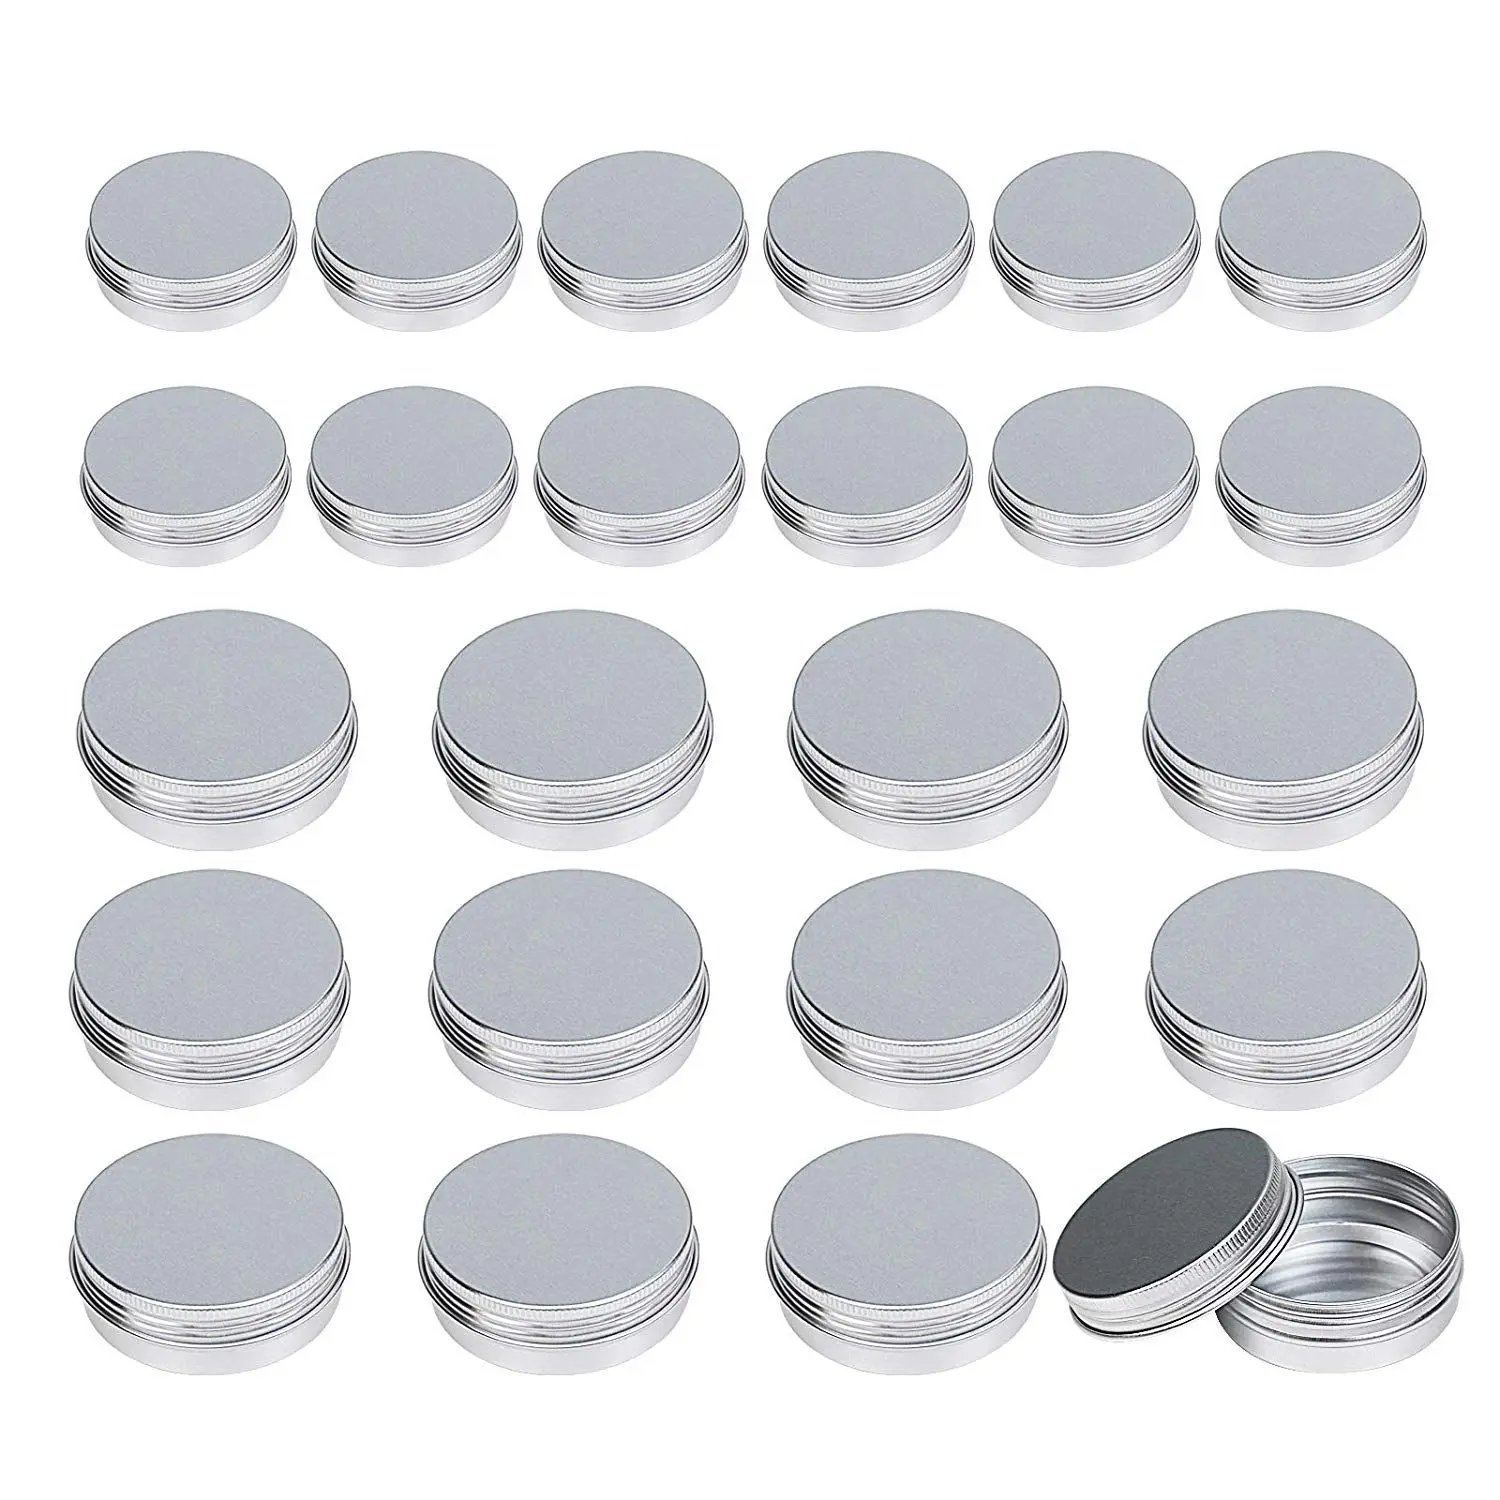 Алюминиевые жестяные банки, 24 шт(1 унция 30 мл+ 2 унции 60 мл) алюминиевые контейнеры для косметики круглые банки с крышкой винта для поделок, Cosmet